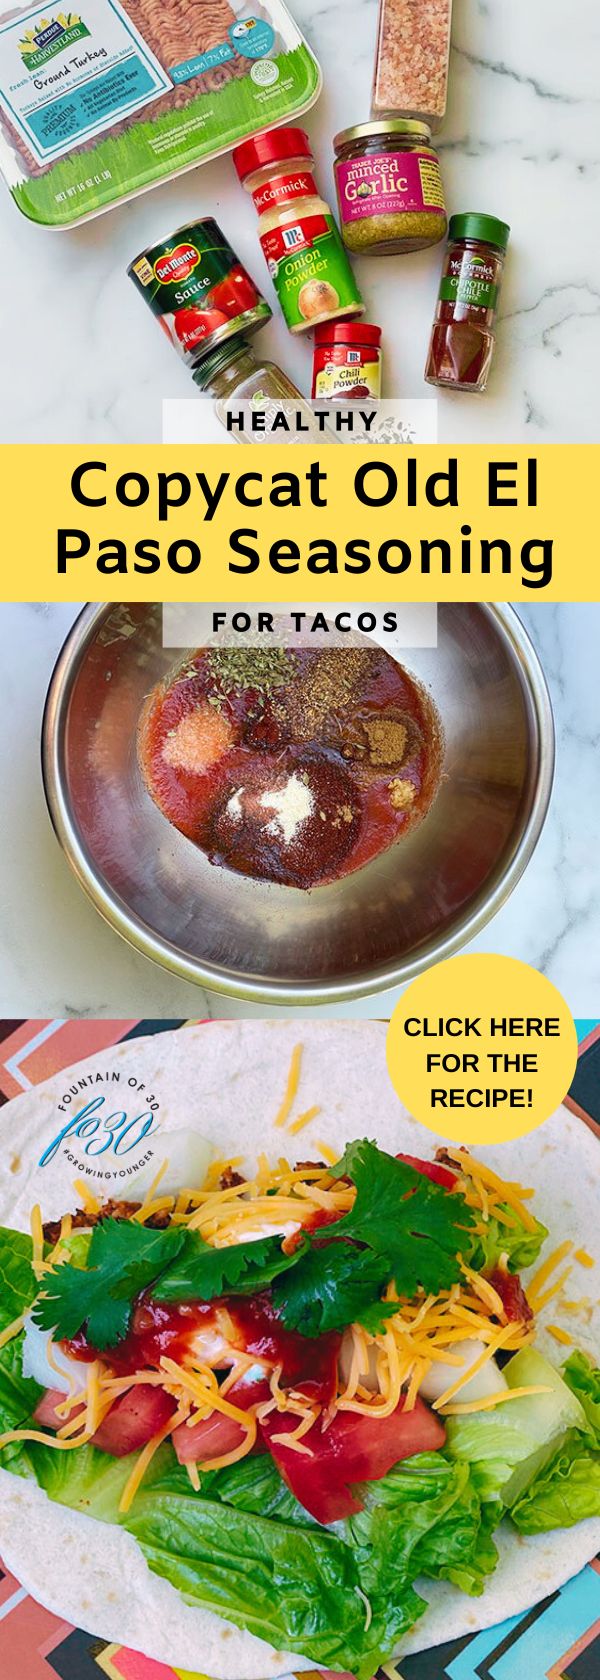 Copycat Old El Paso Seasoning for Tacos fountainof30